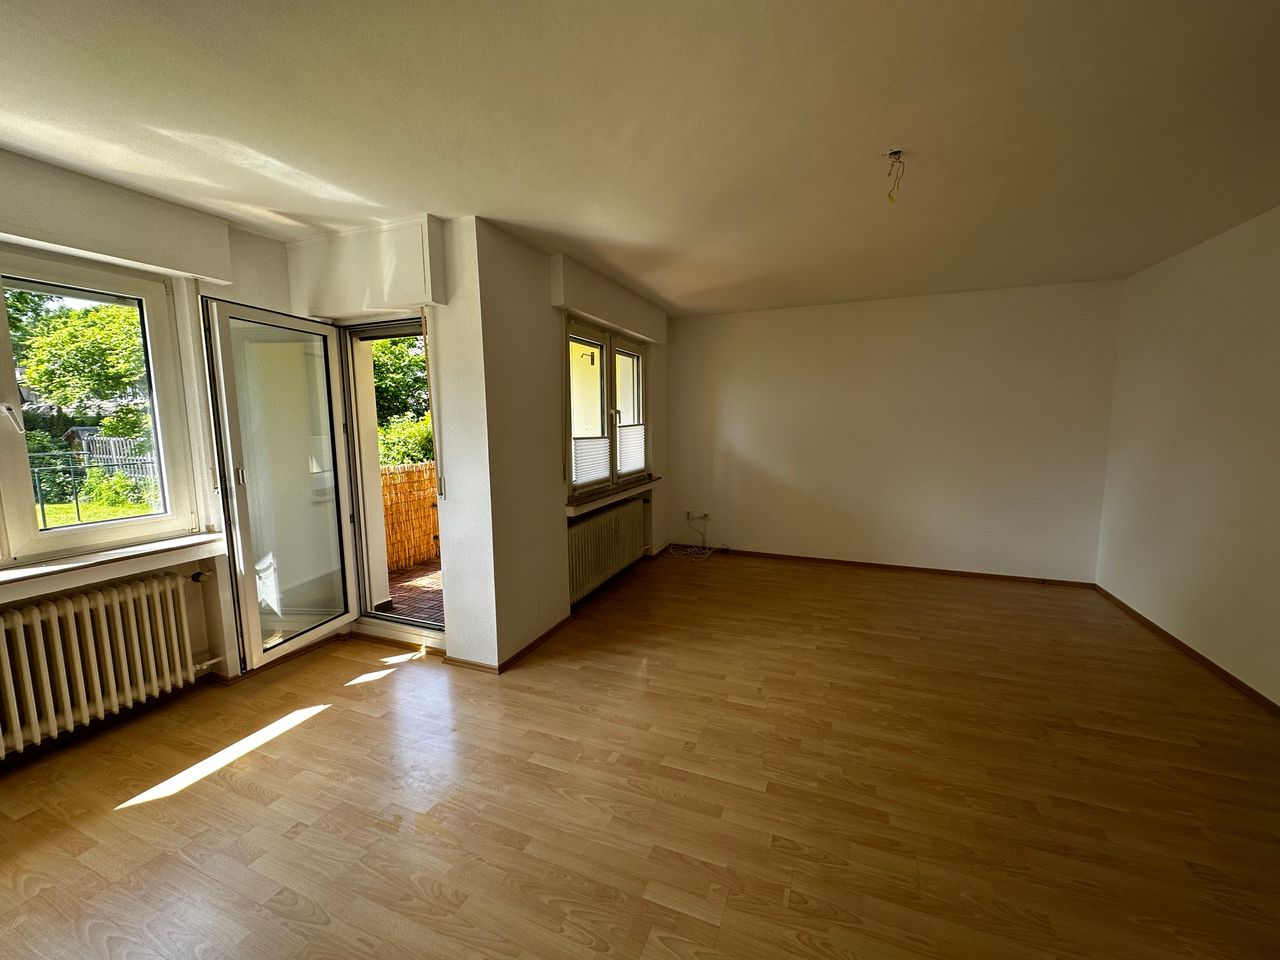 Gemütliche 2 Zimmer Wohnung in Köln Wahn zu vermieten